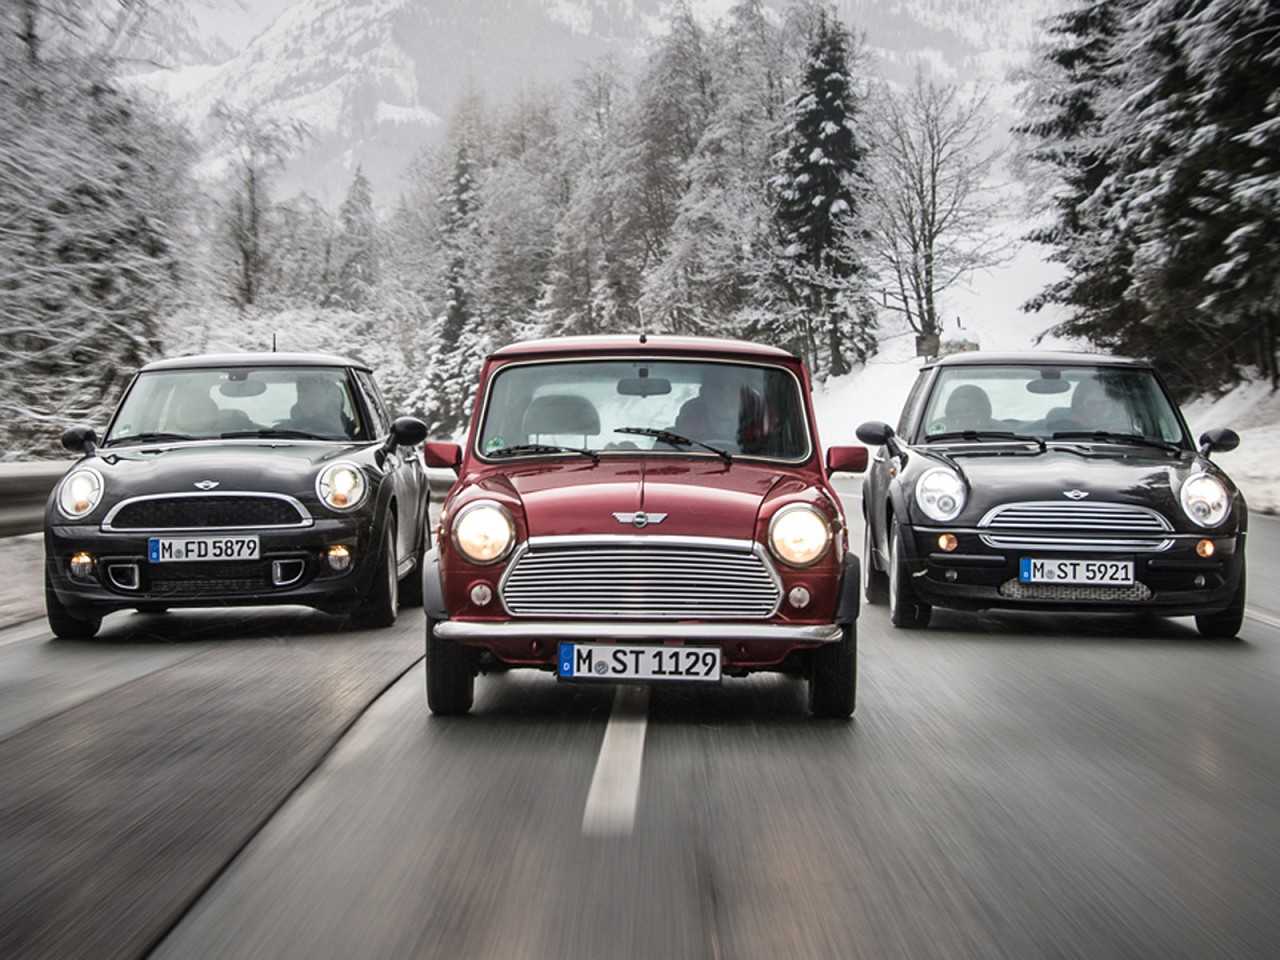 Old vs new. Mini Cooper old vs New. Mini Cooper old. Mini Cooper old and New. Популярные машины в Швейцарии мини Купер.